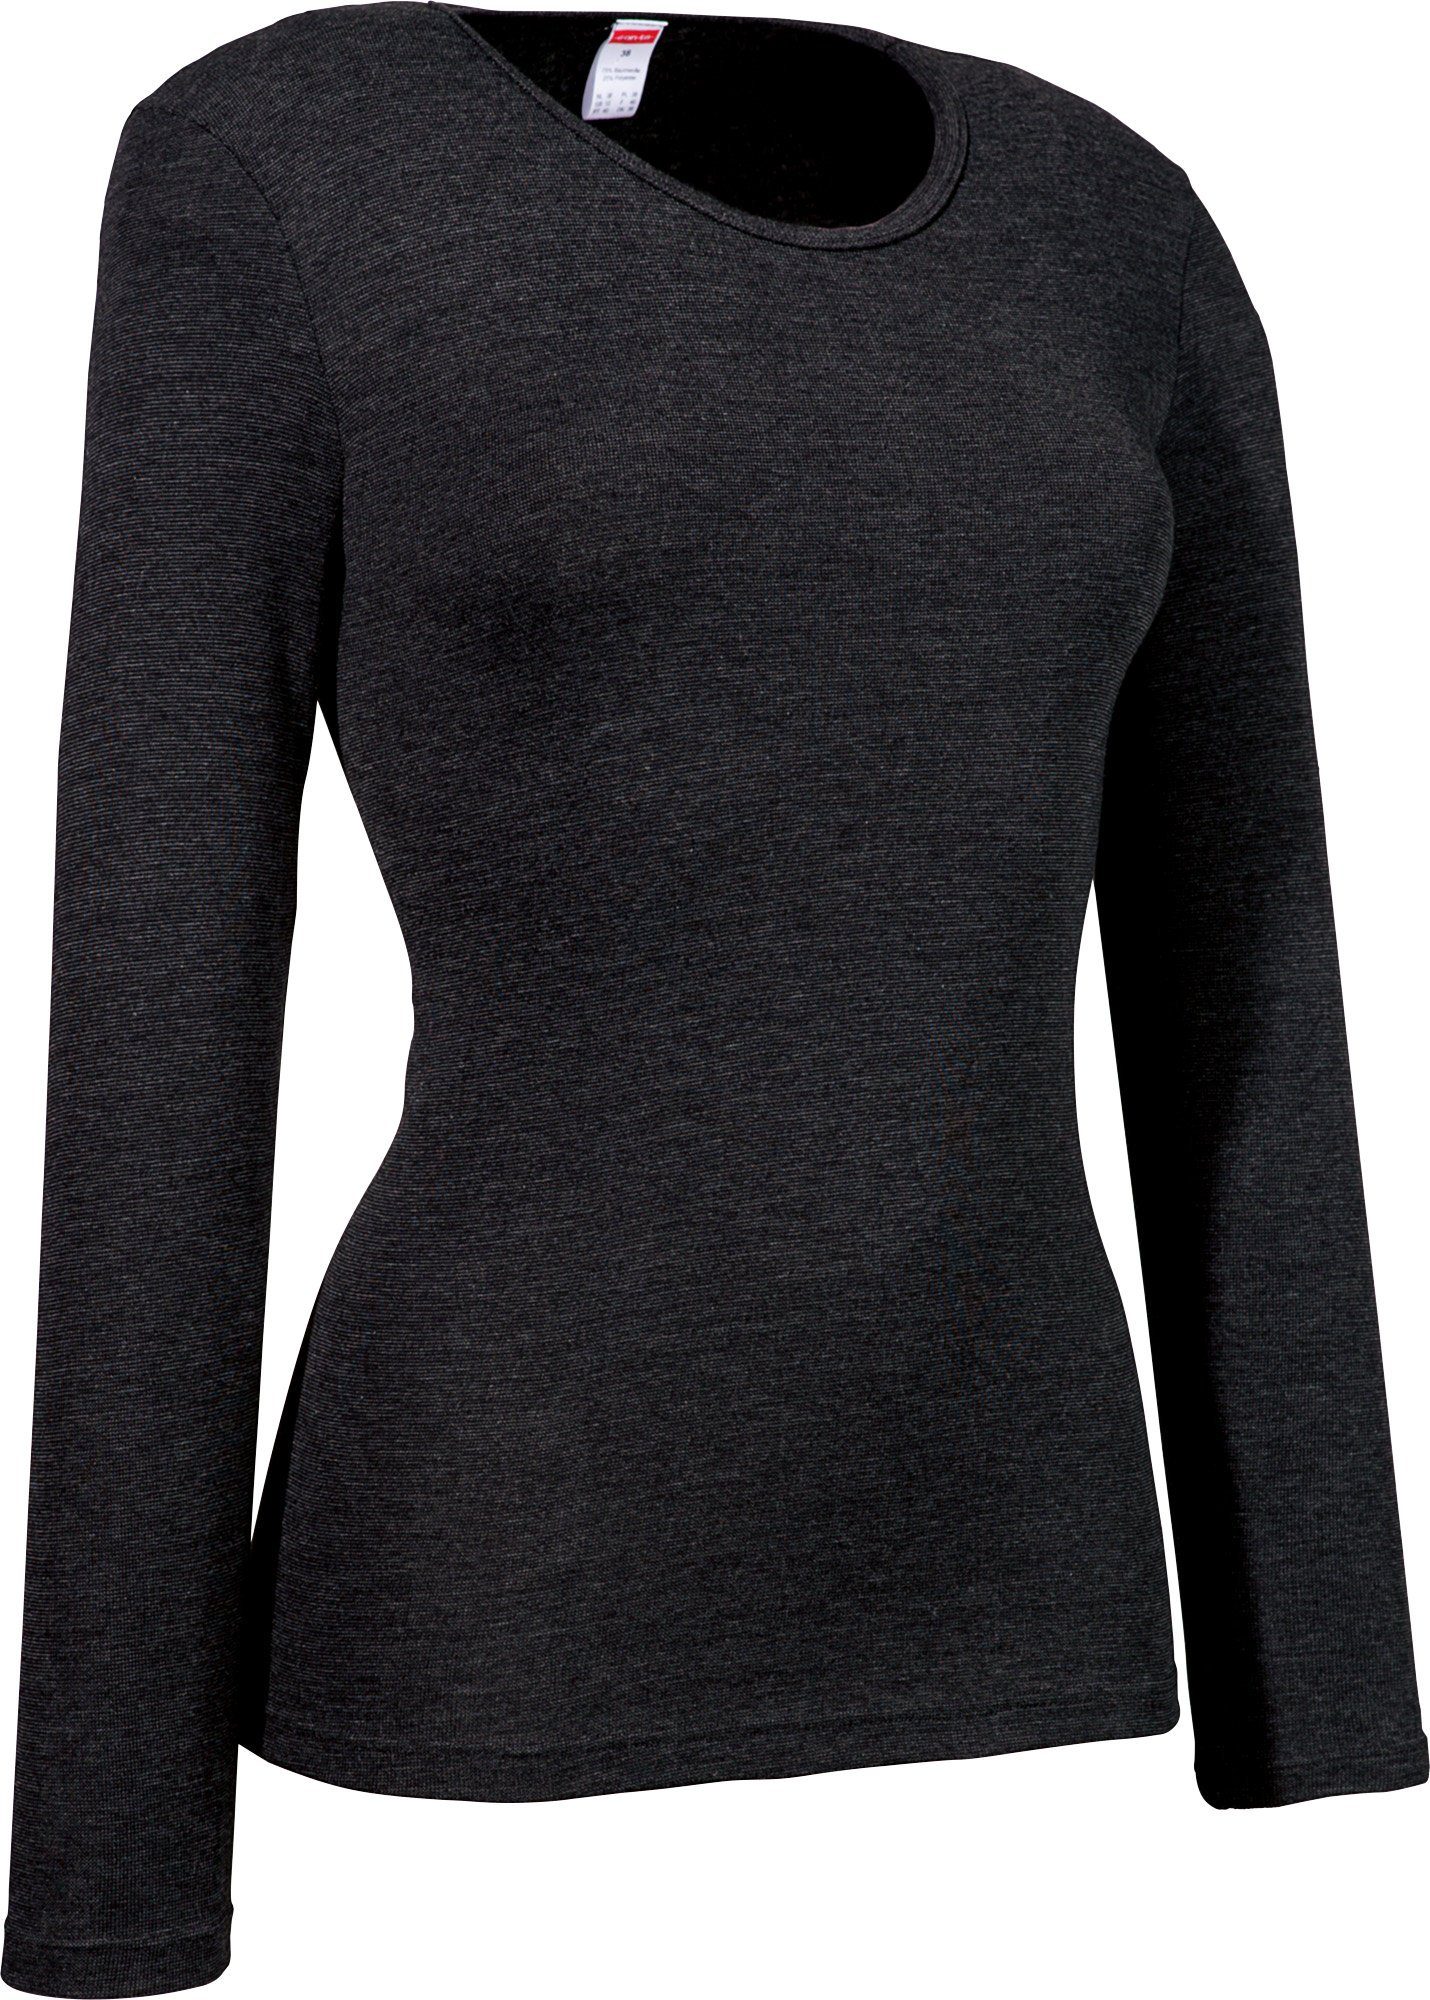 Damen-Thermo-Unterhemd, conta langarm schwarz Feinripp Unterhemd Streifen